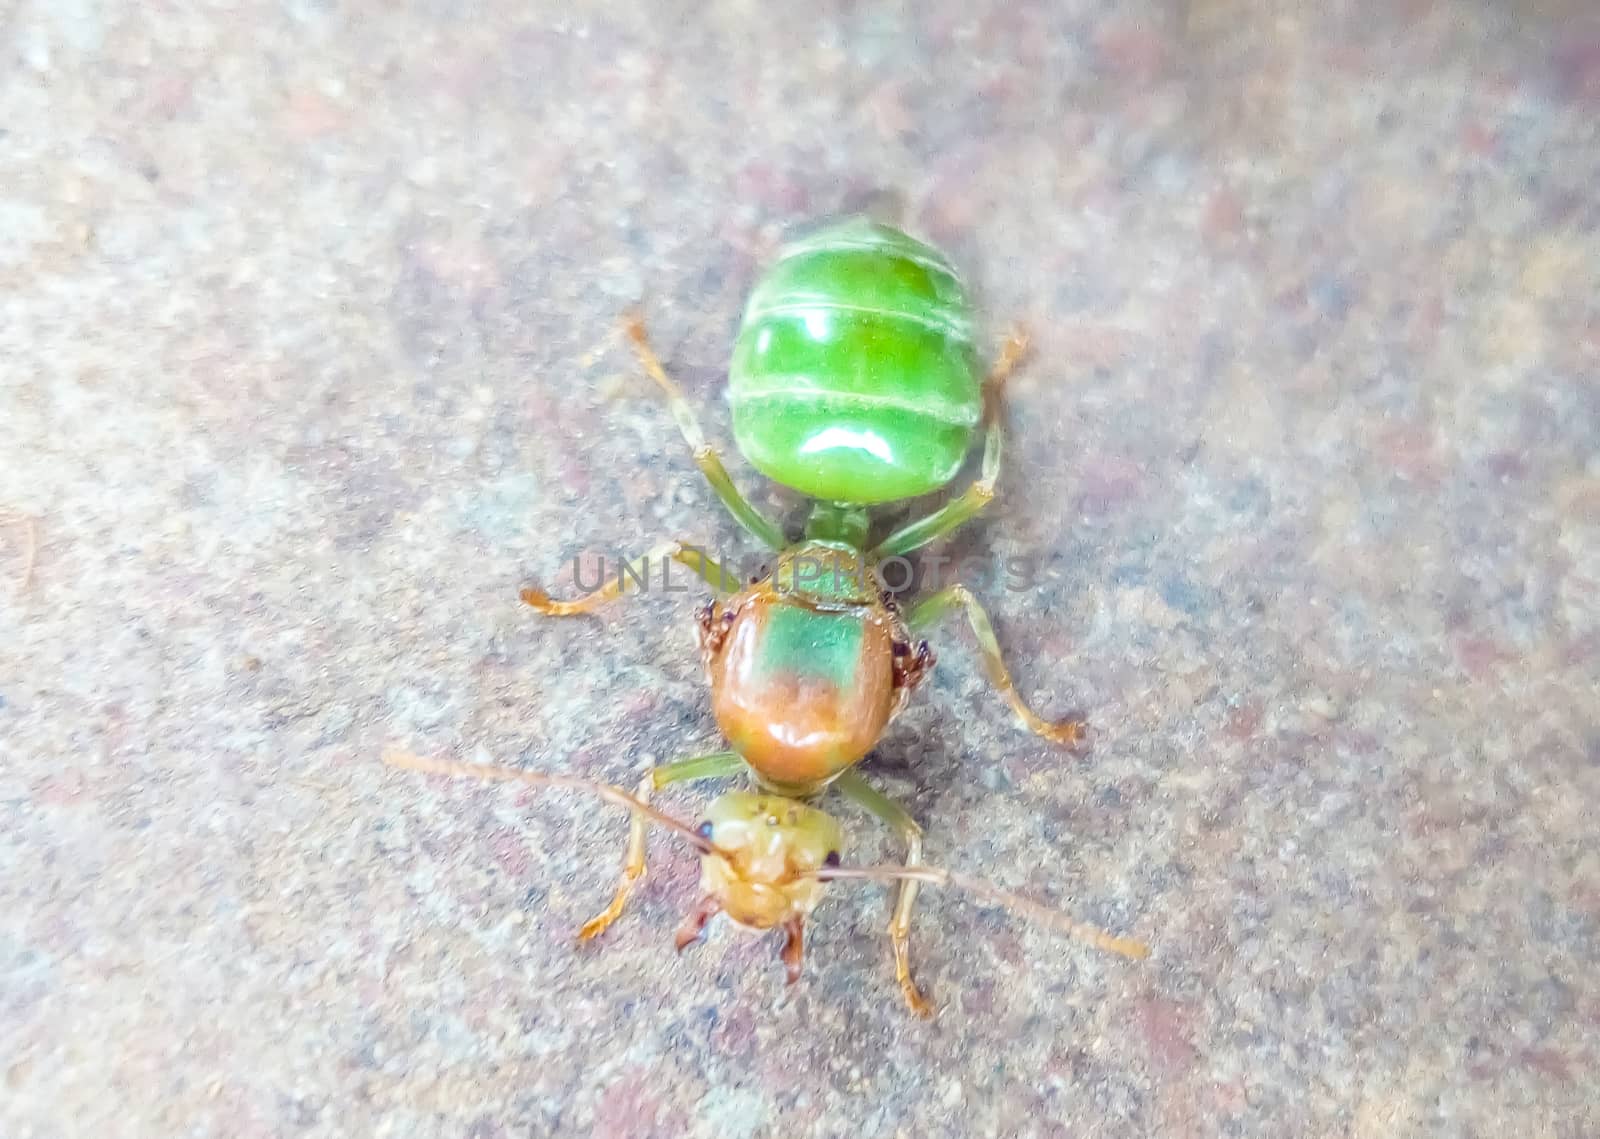 green bug on a green leaf